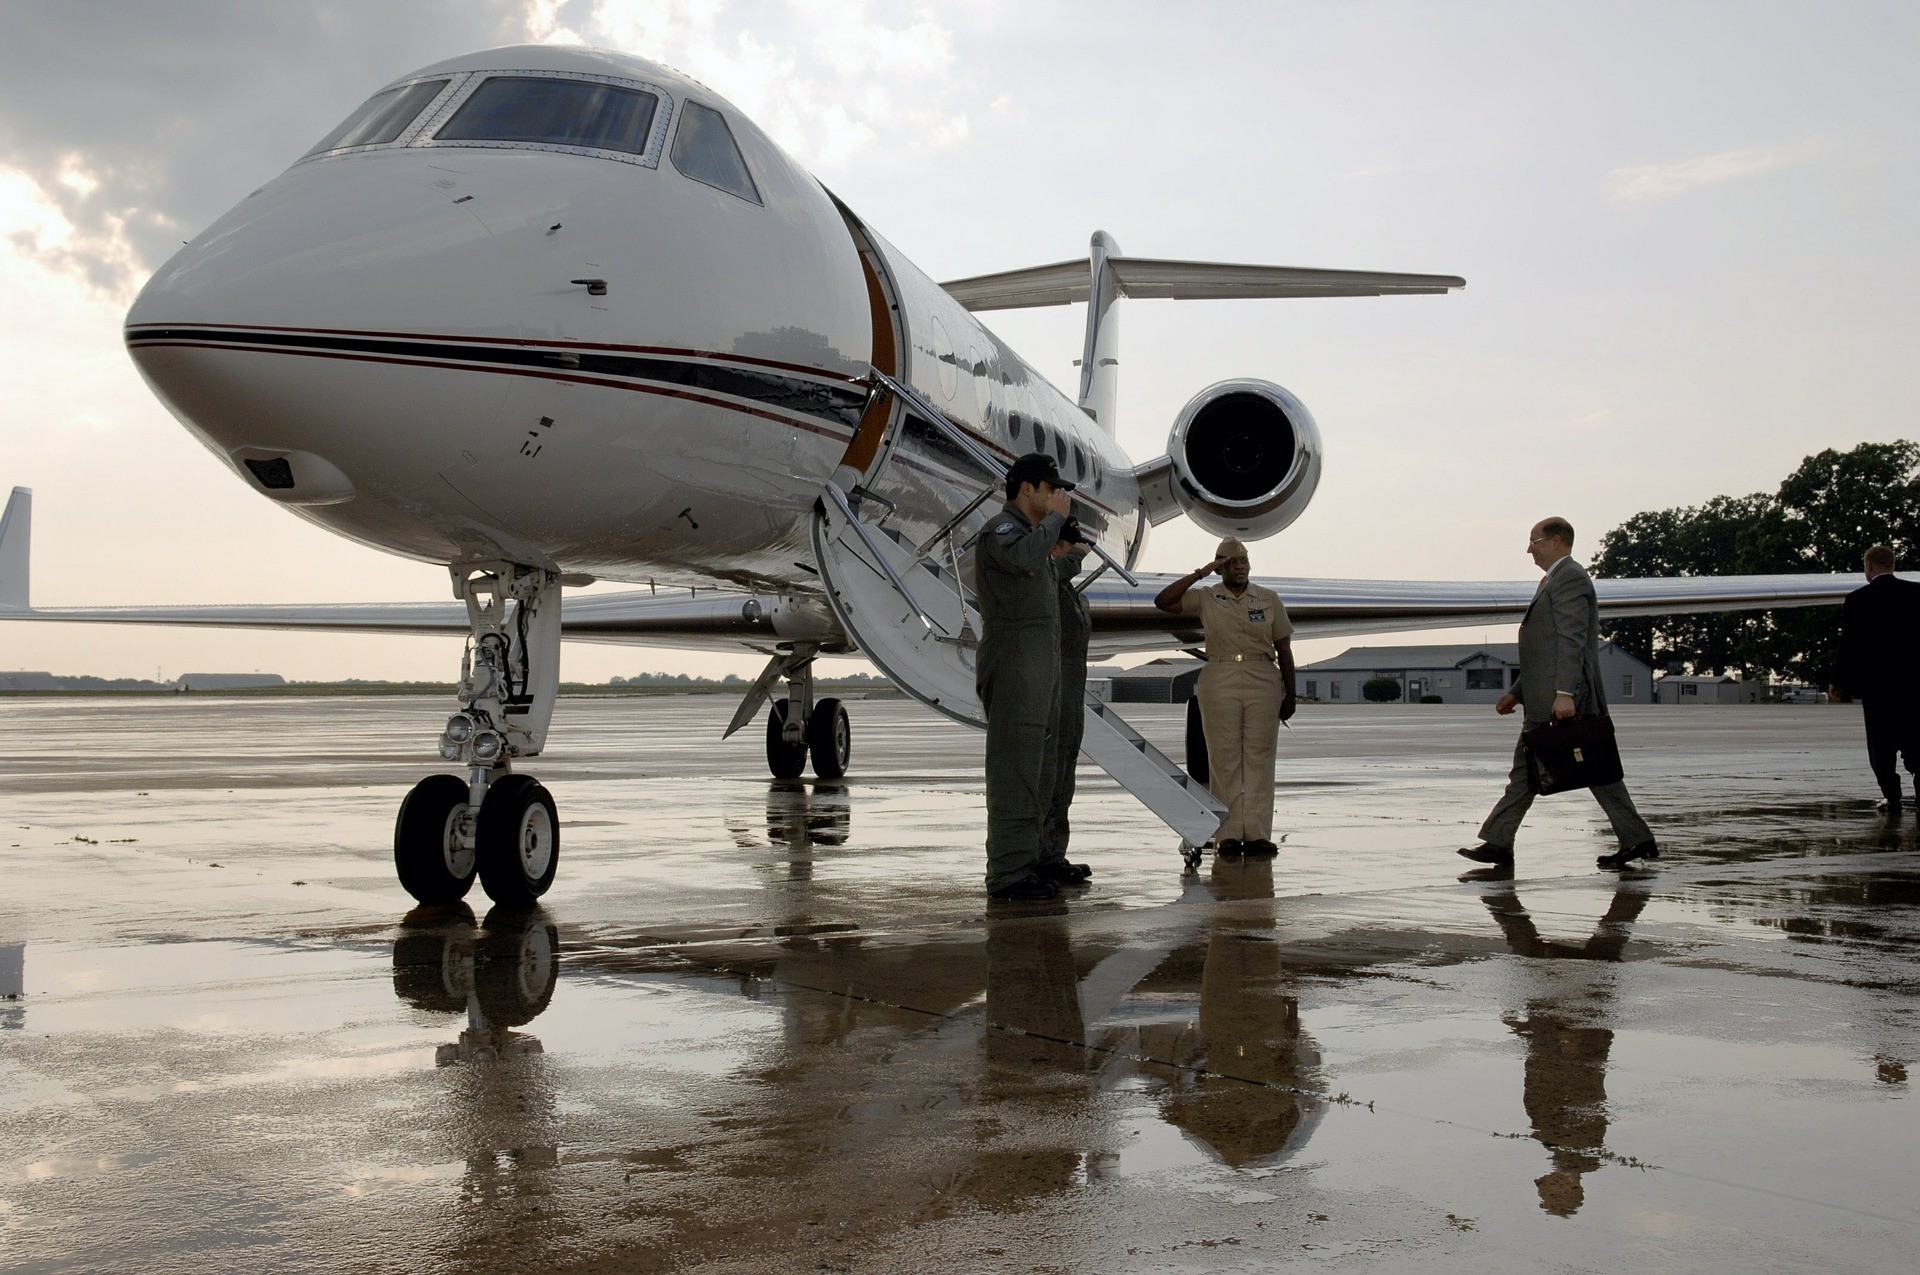 Boarding private jet